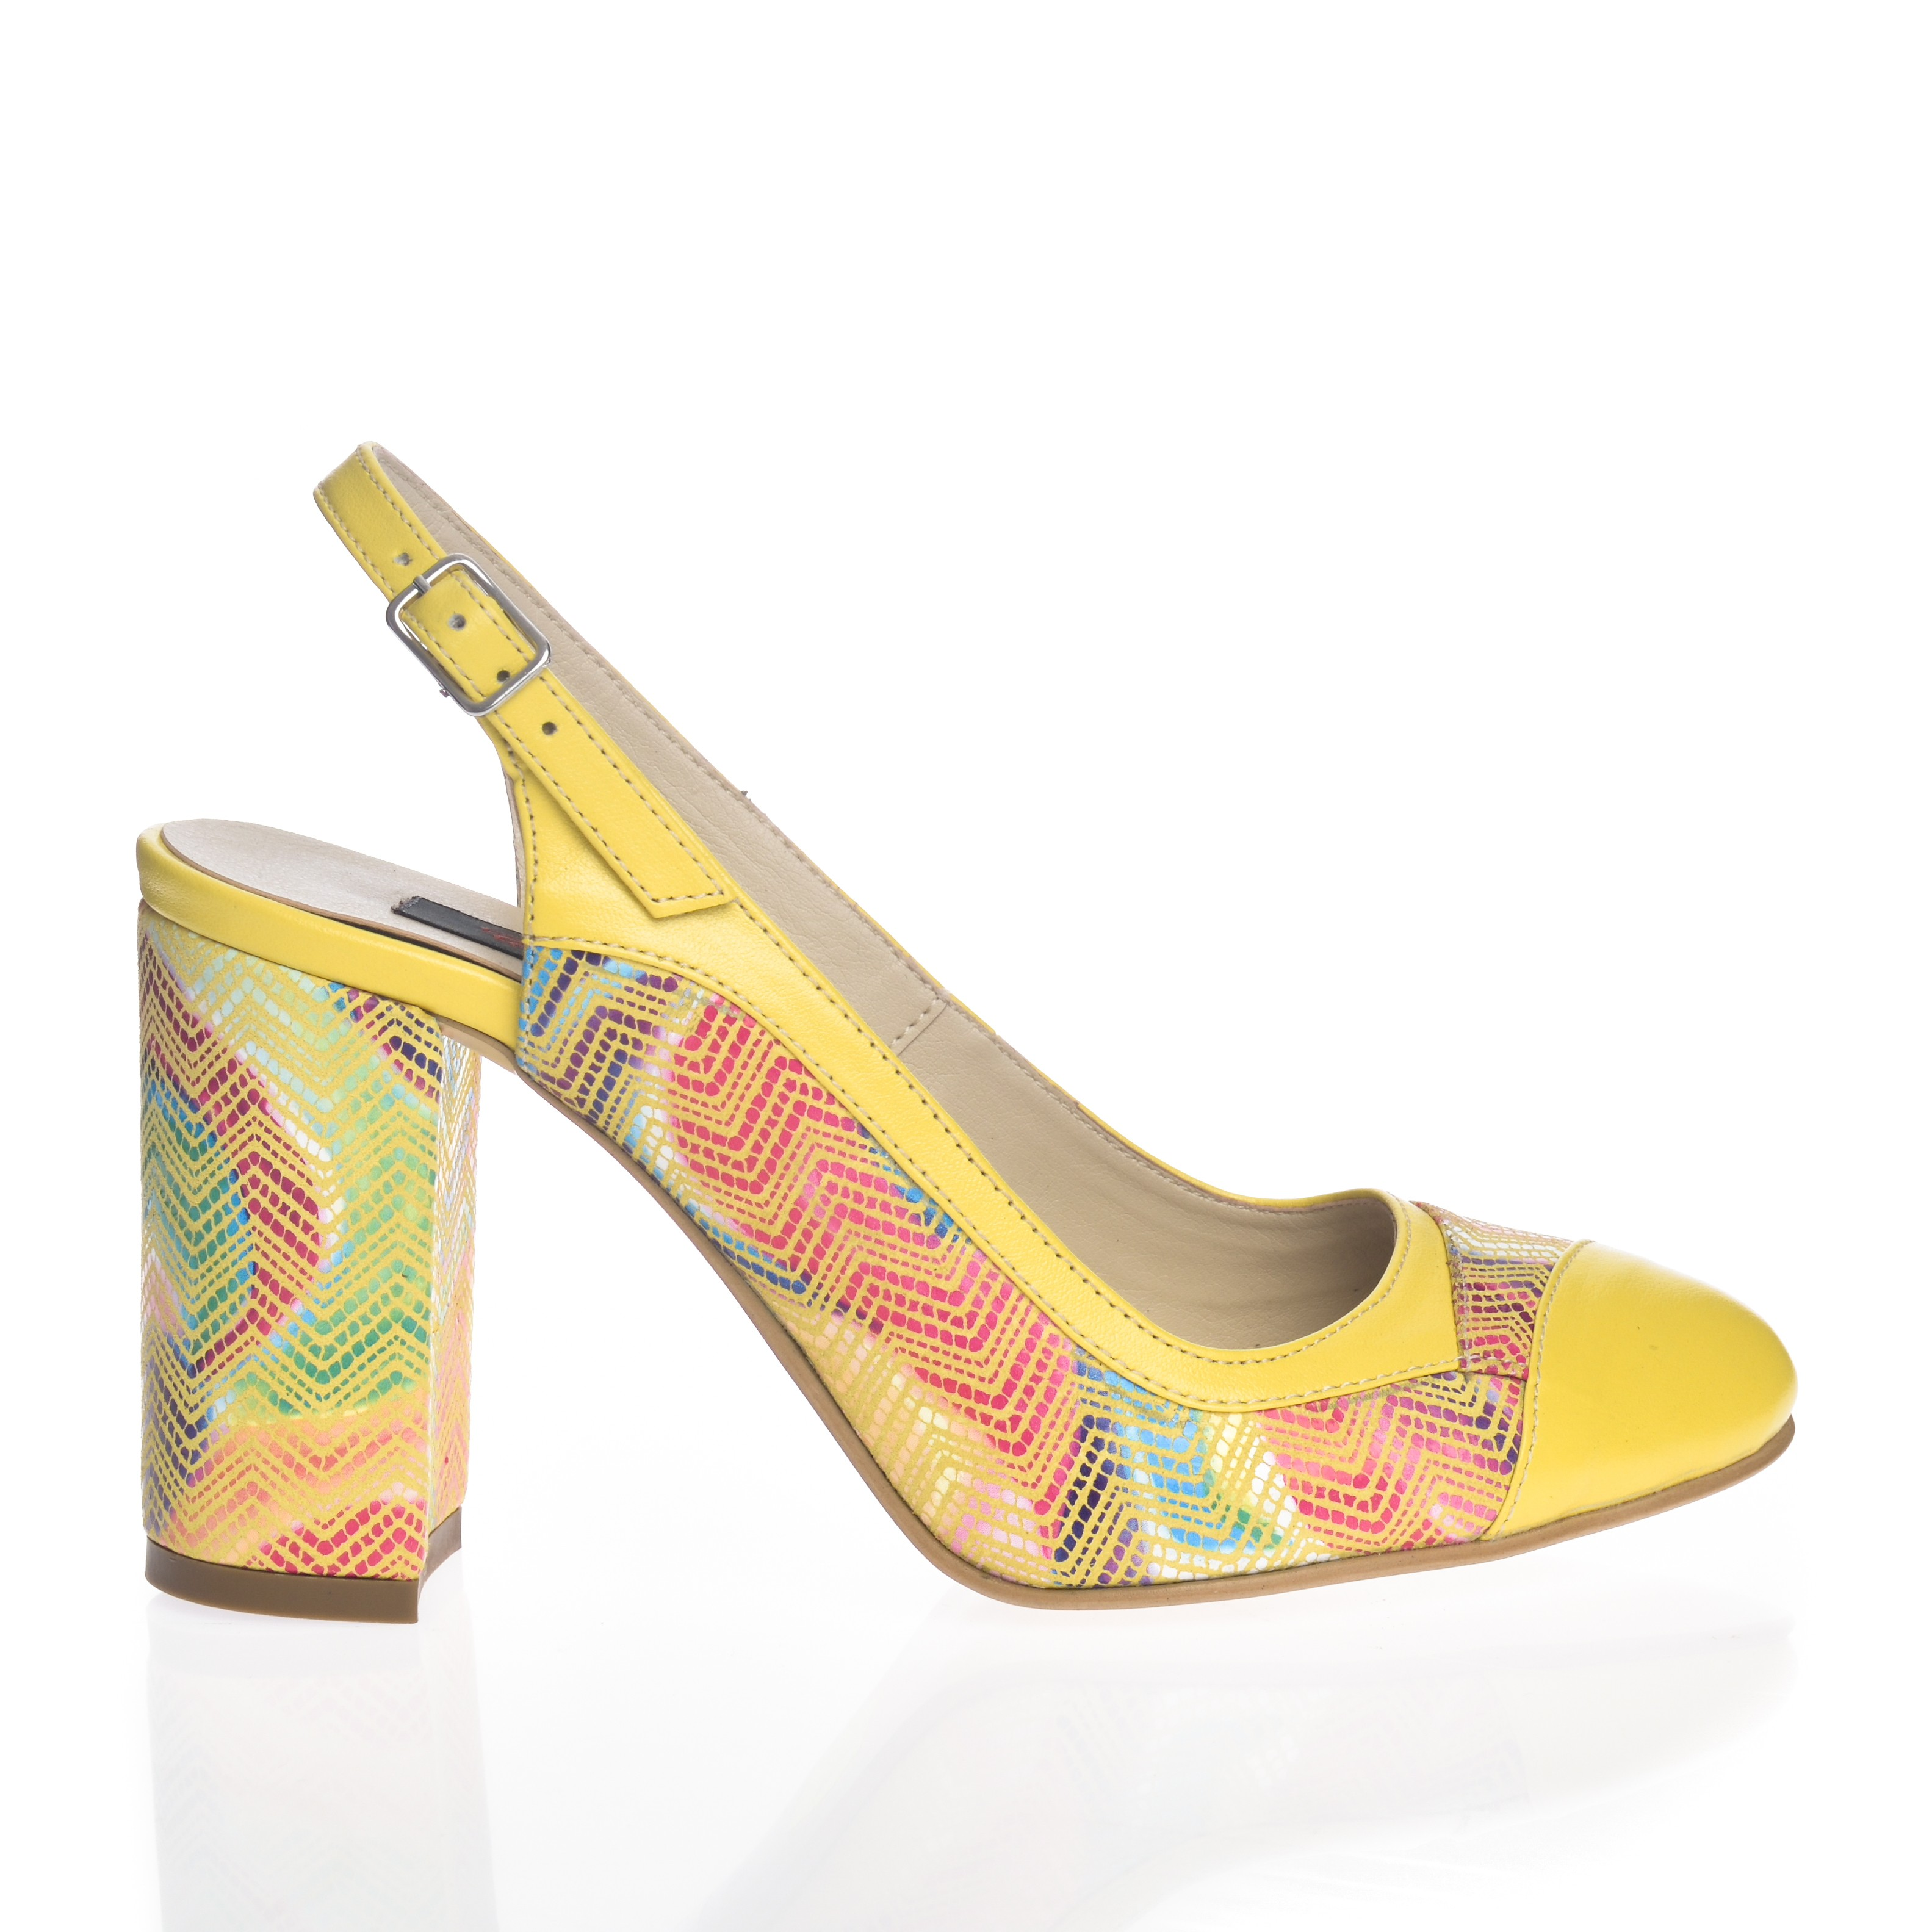 Sandale dama din piele naturala - Galben mozaic cu toc multicolor - 891 GMZ